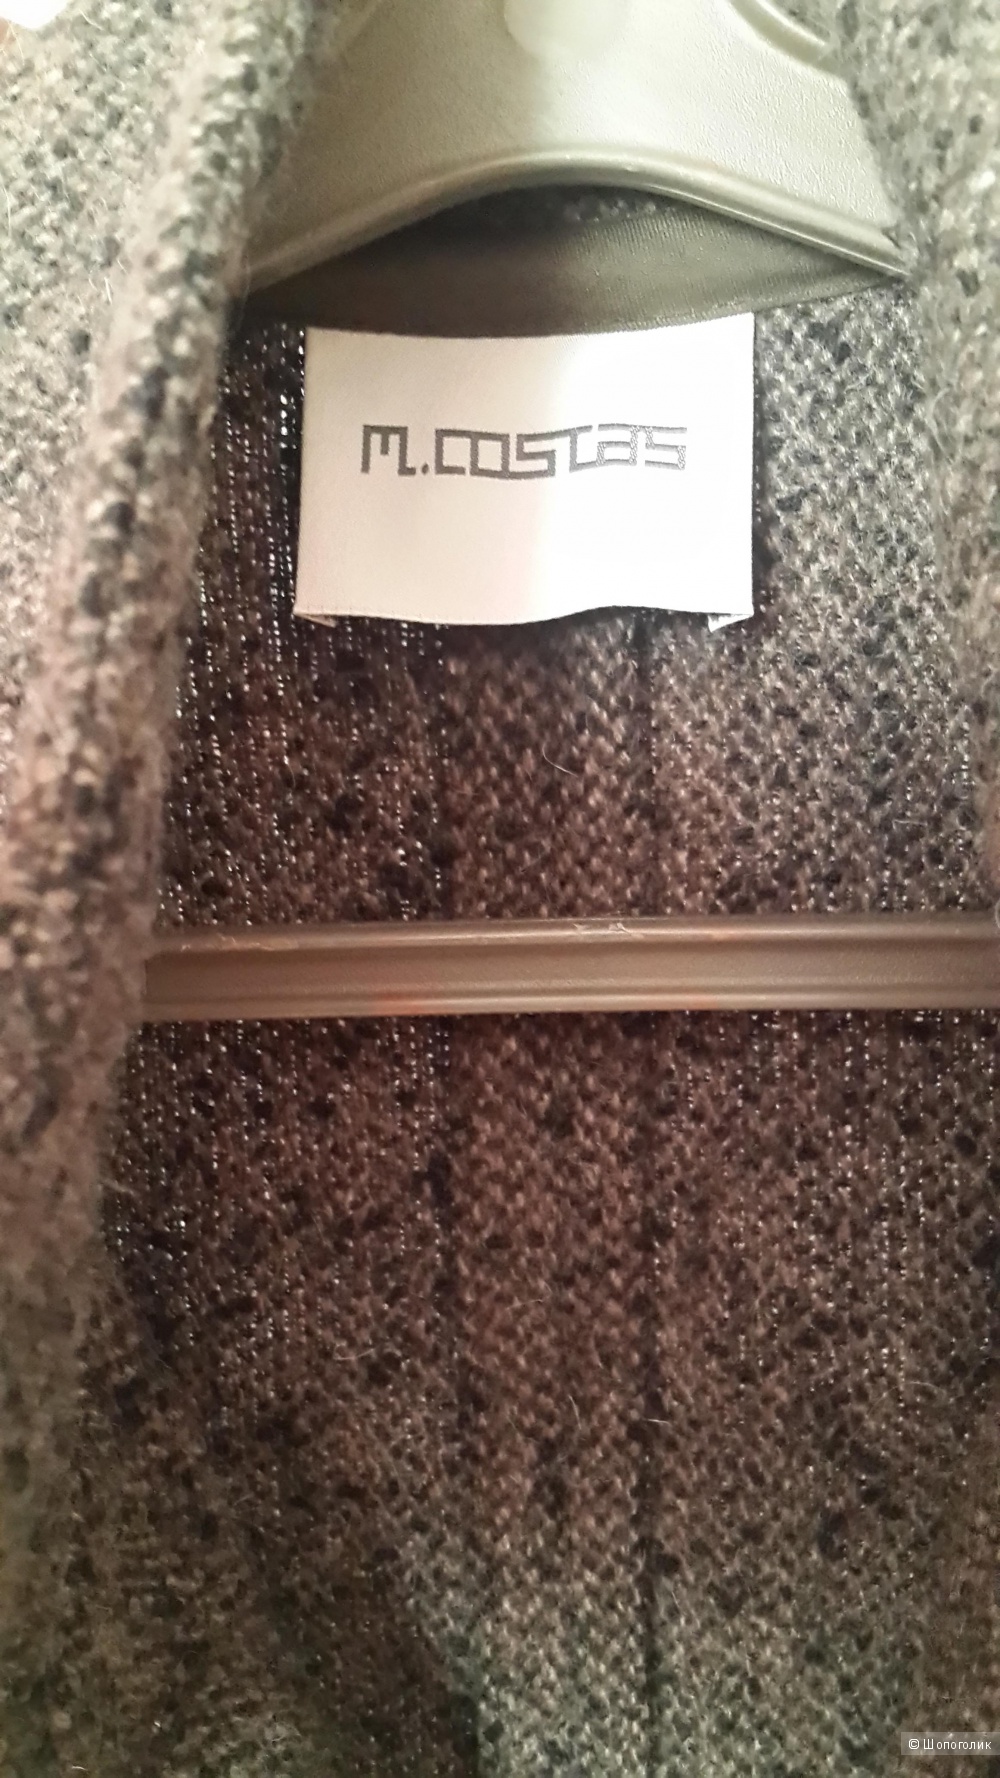 Кардиган французского бренда M.Costas размер М